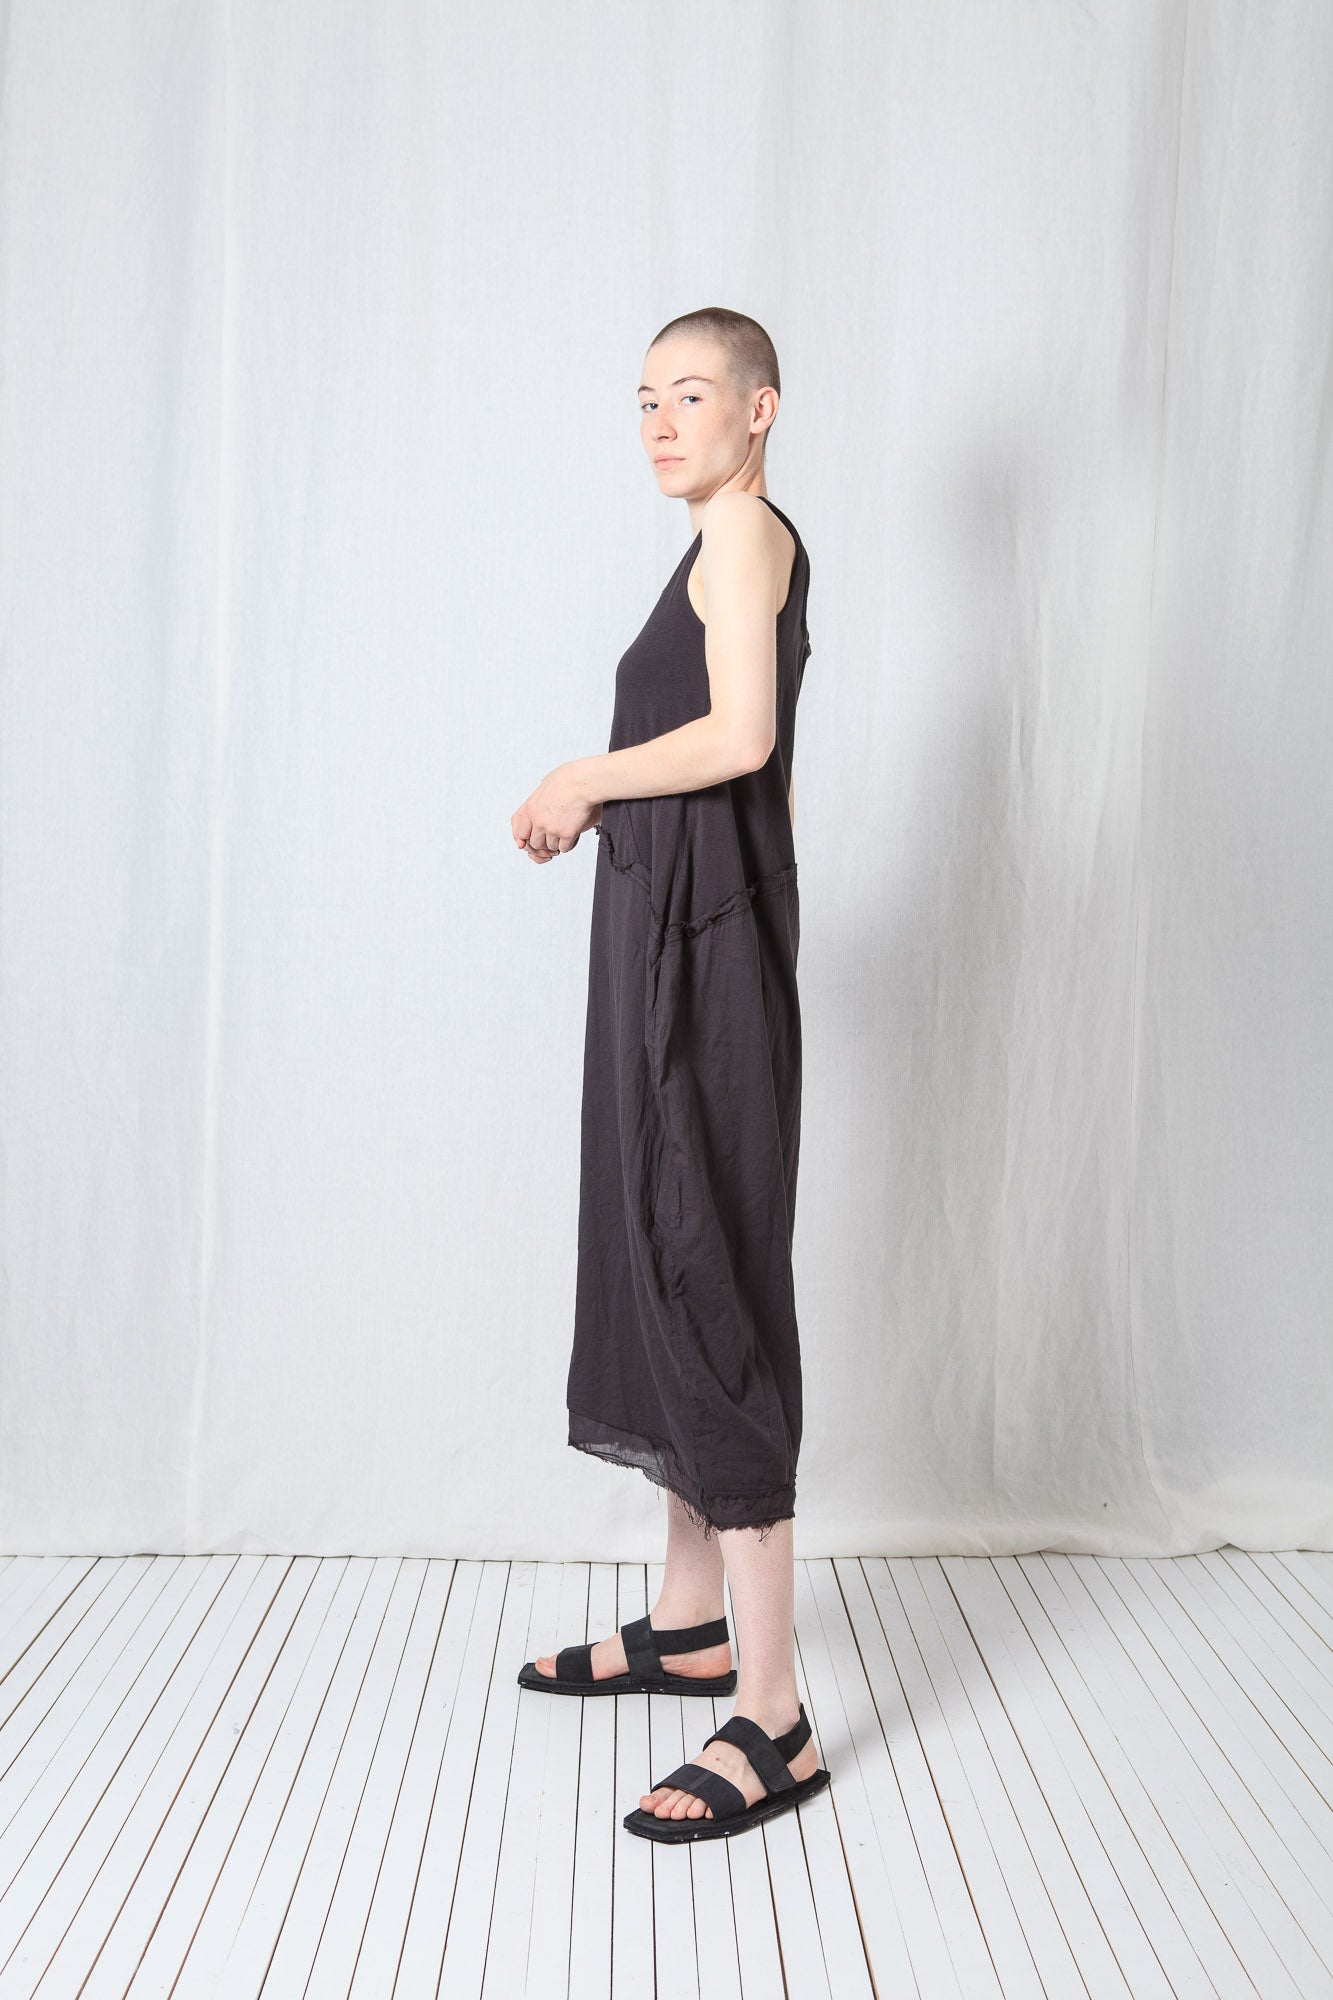 Asymmetric O-Shape Dress_Cotton Jersey + Voile + Mesh